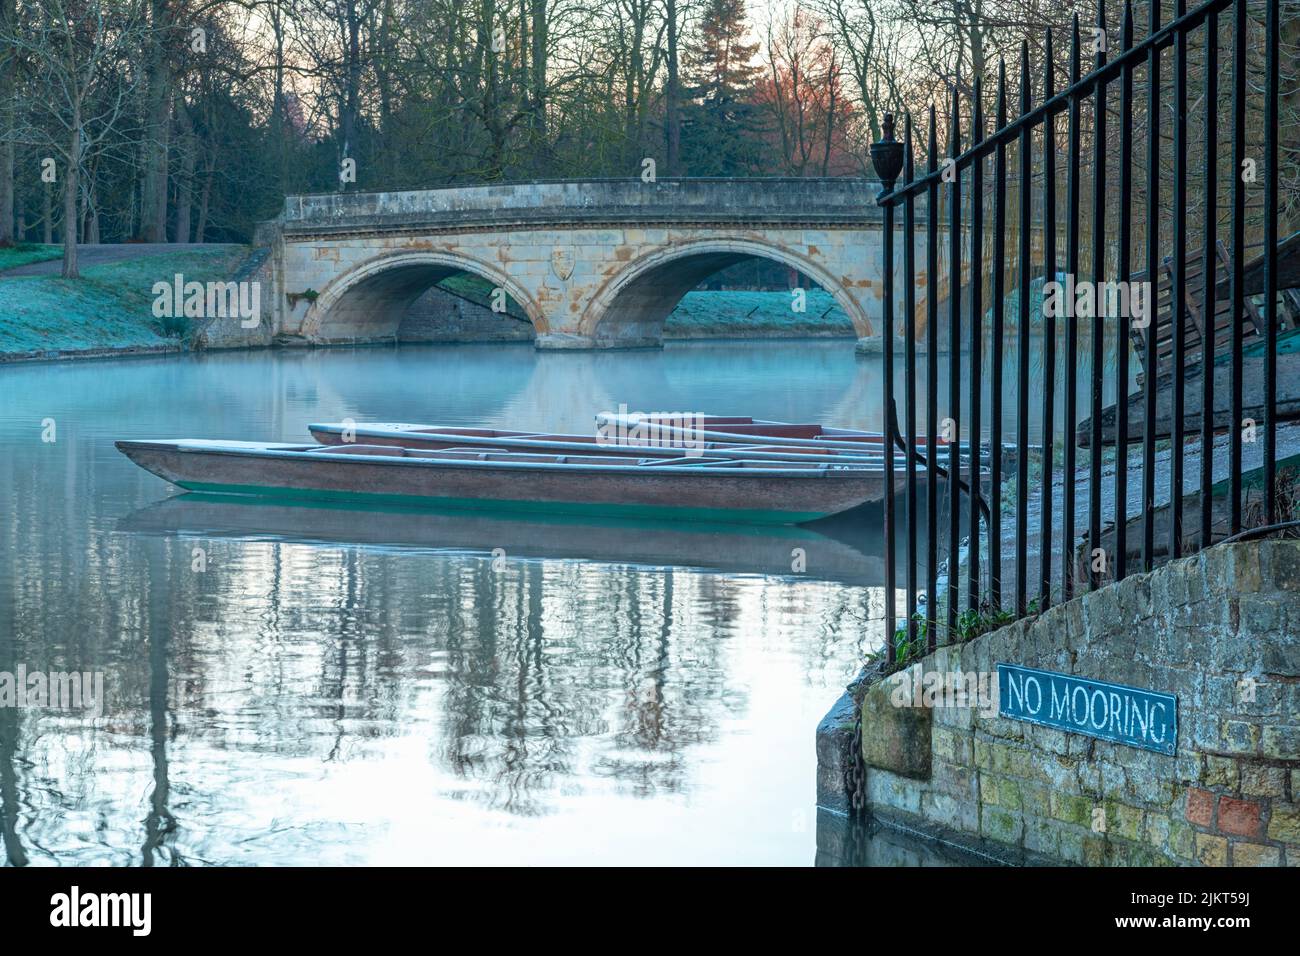 UK, England, Cambridgeshire, Cambridge, University of Cambridge, Trinity College, River Cam, Trinity Bridge Stock Photo